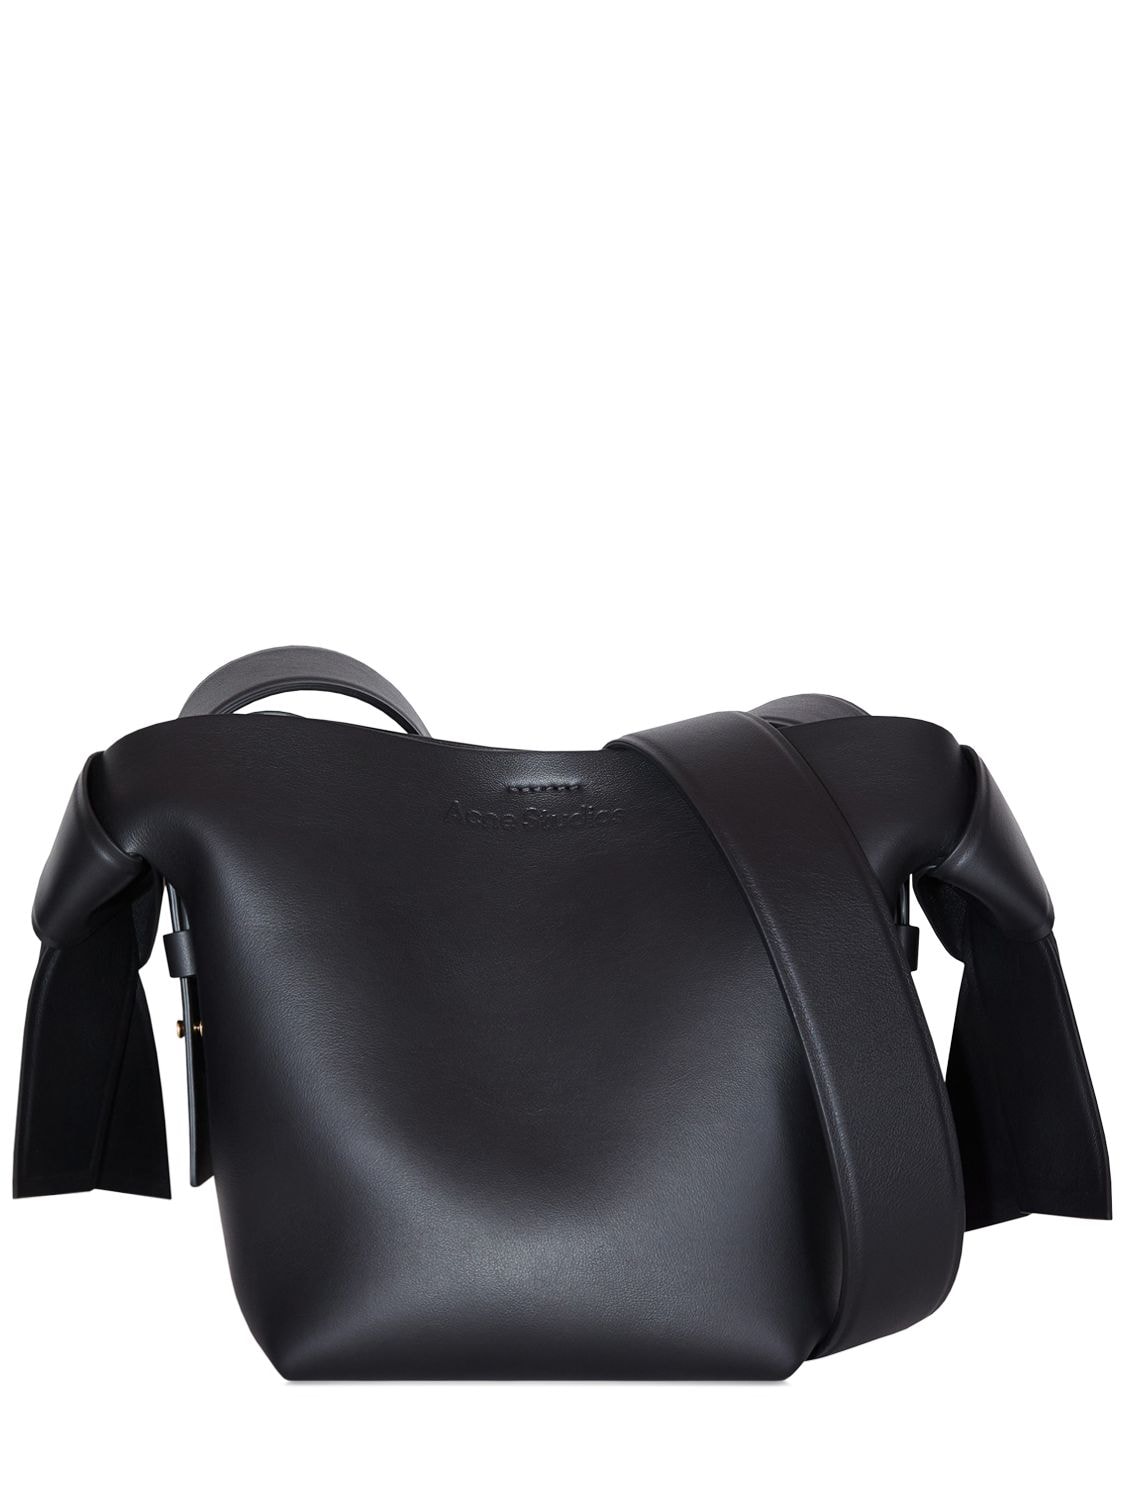 Acne Studios Mini Musubi Leather Top Handle Bag In Black